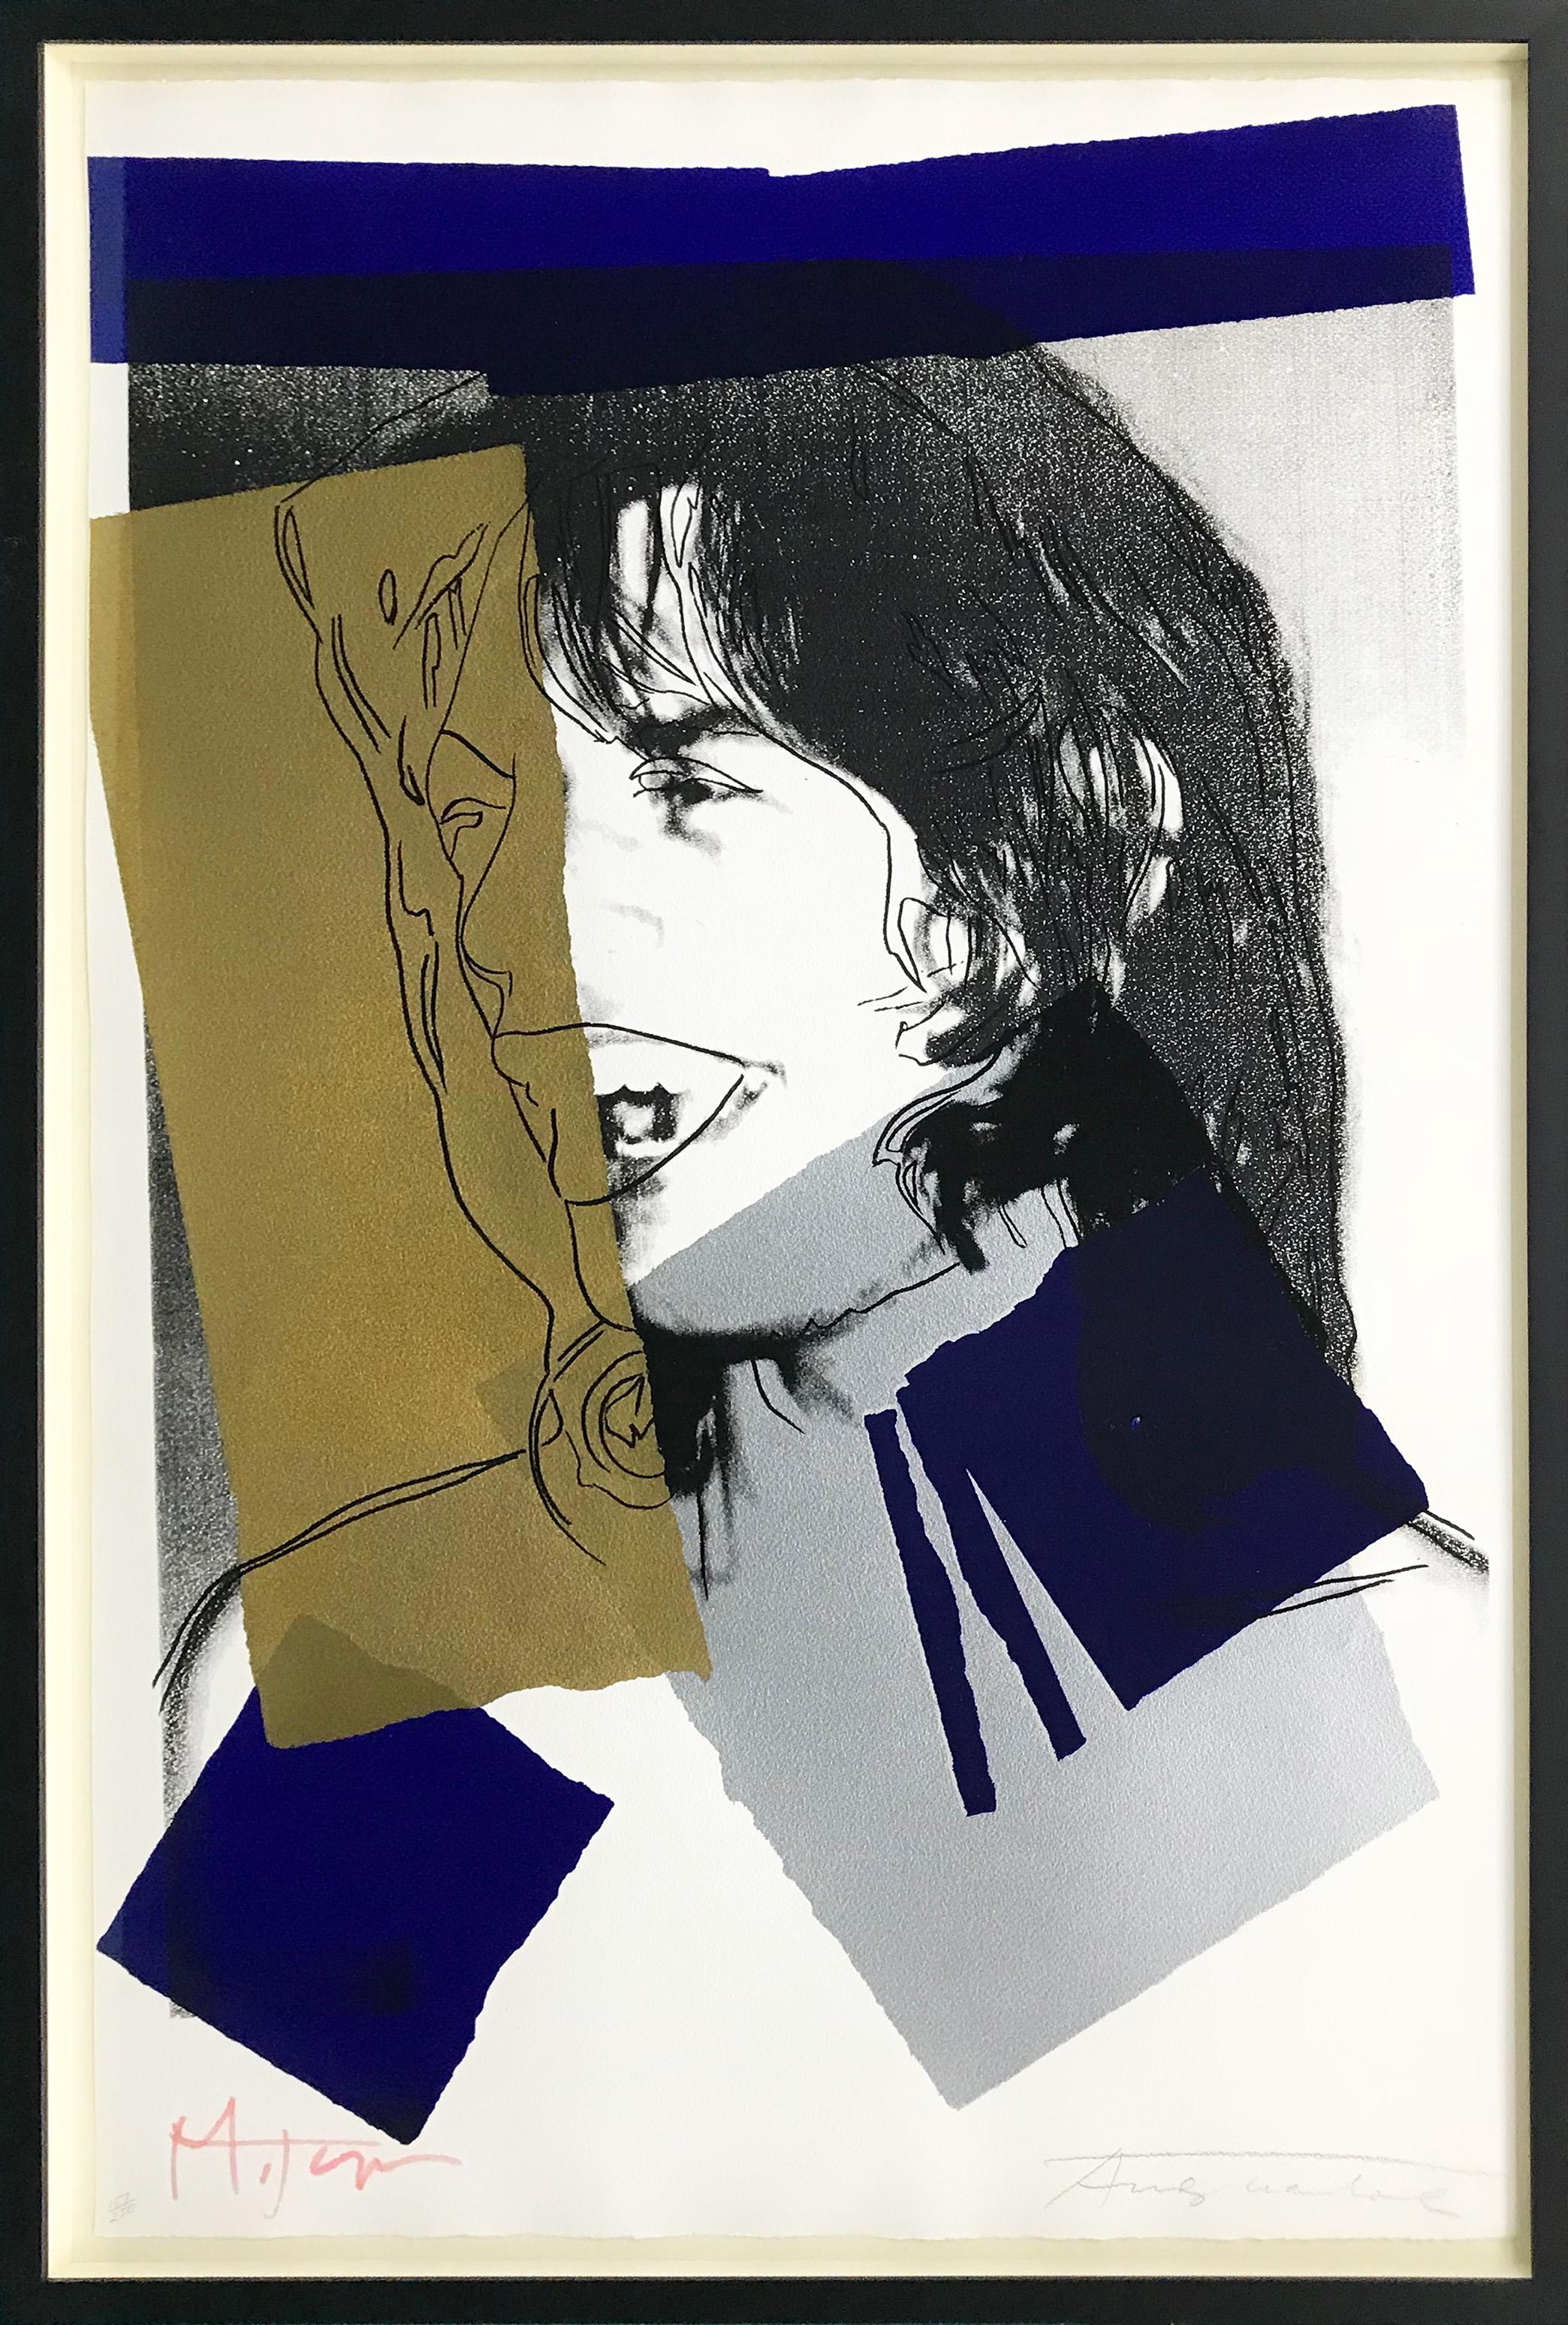 Andy Warhol Portrait Print - MICK JAGGER FS II.142